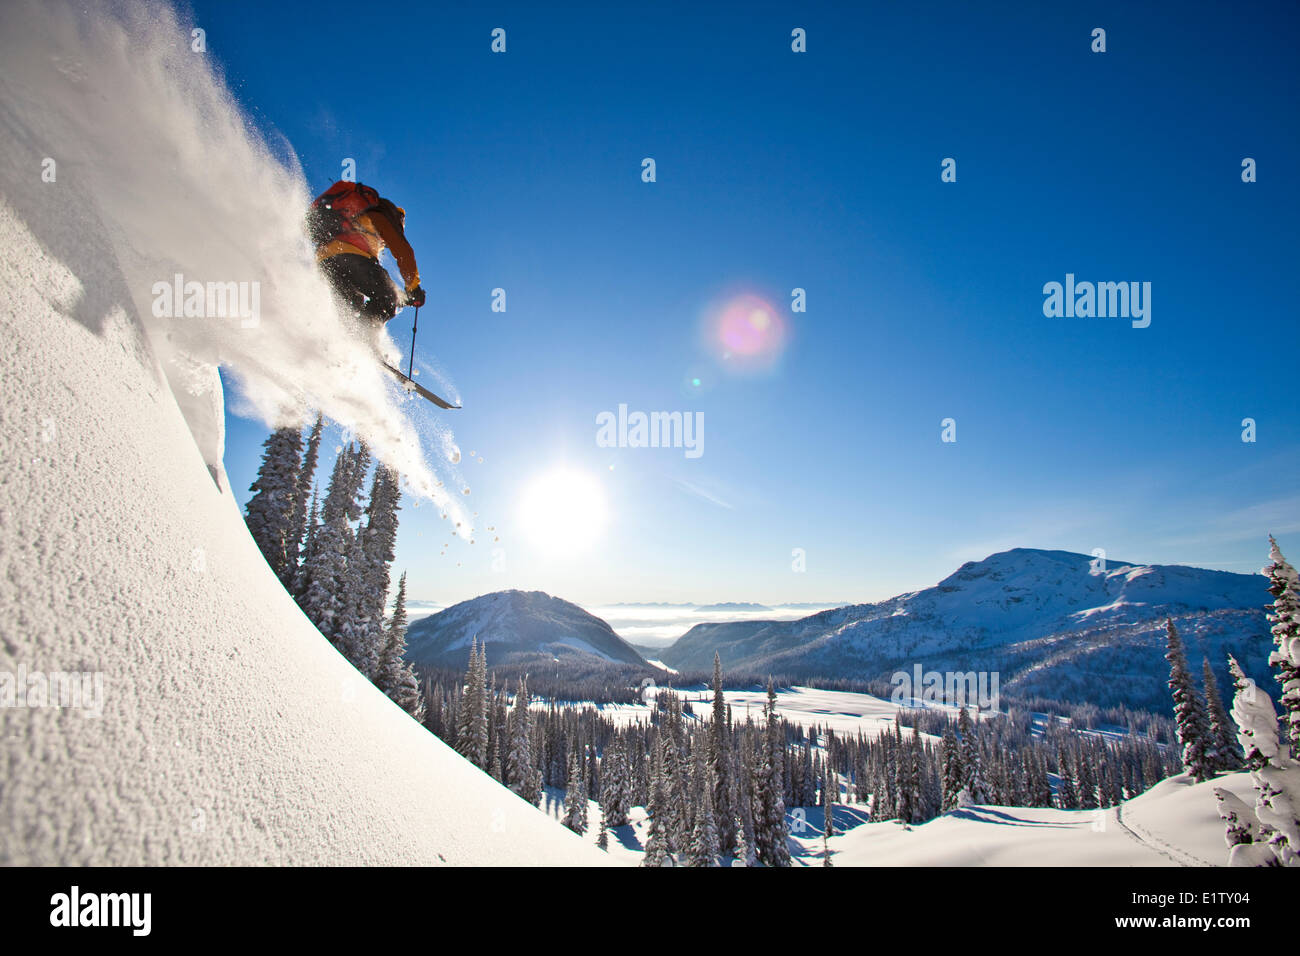 Un homme tout en poudreuse Ski Le ski nordique au sol, l'arrière-pays de montagnes Monashee, Revelstoke, BC Banque D'Images